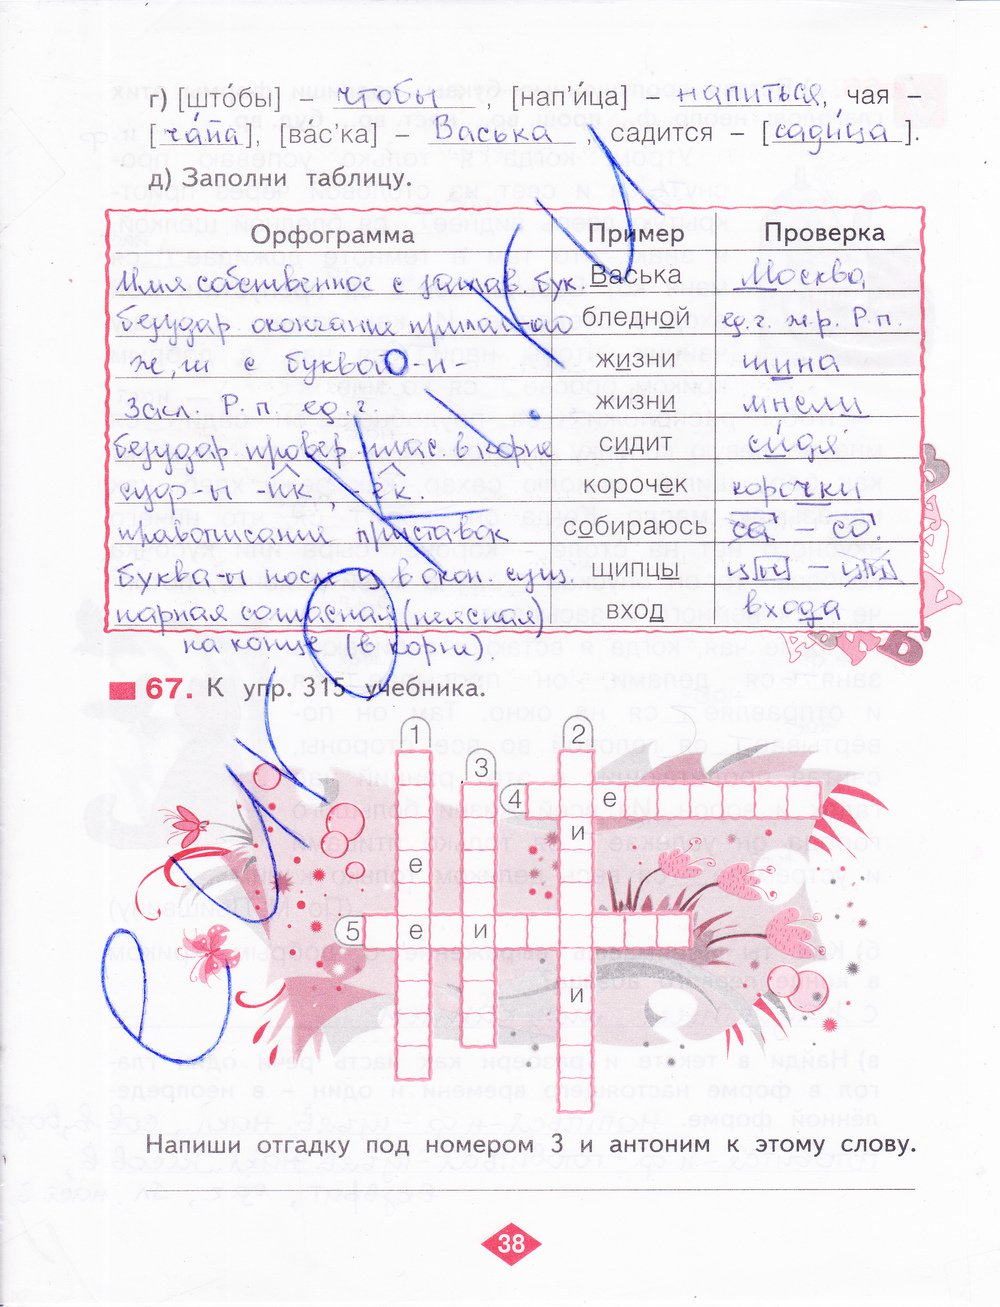 гдз 4 класс рабочая тетрадь часть 2 страница 38 русский язык Нечаева, Воскресенская